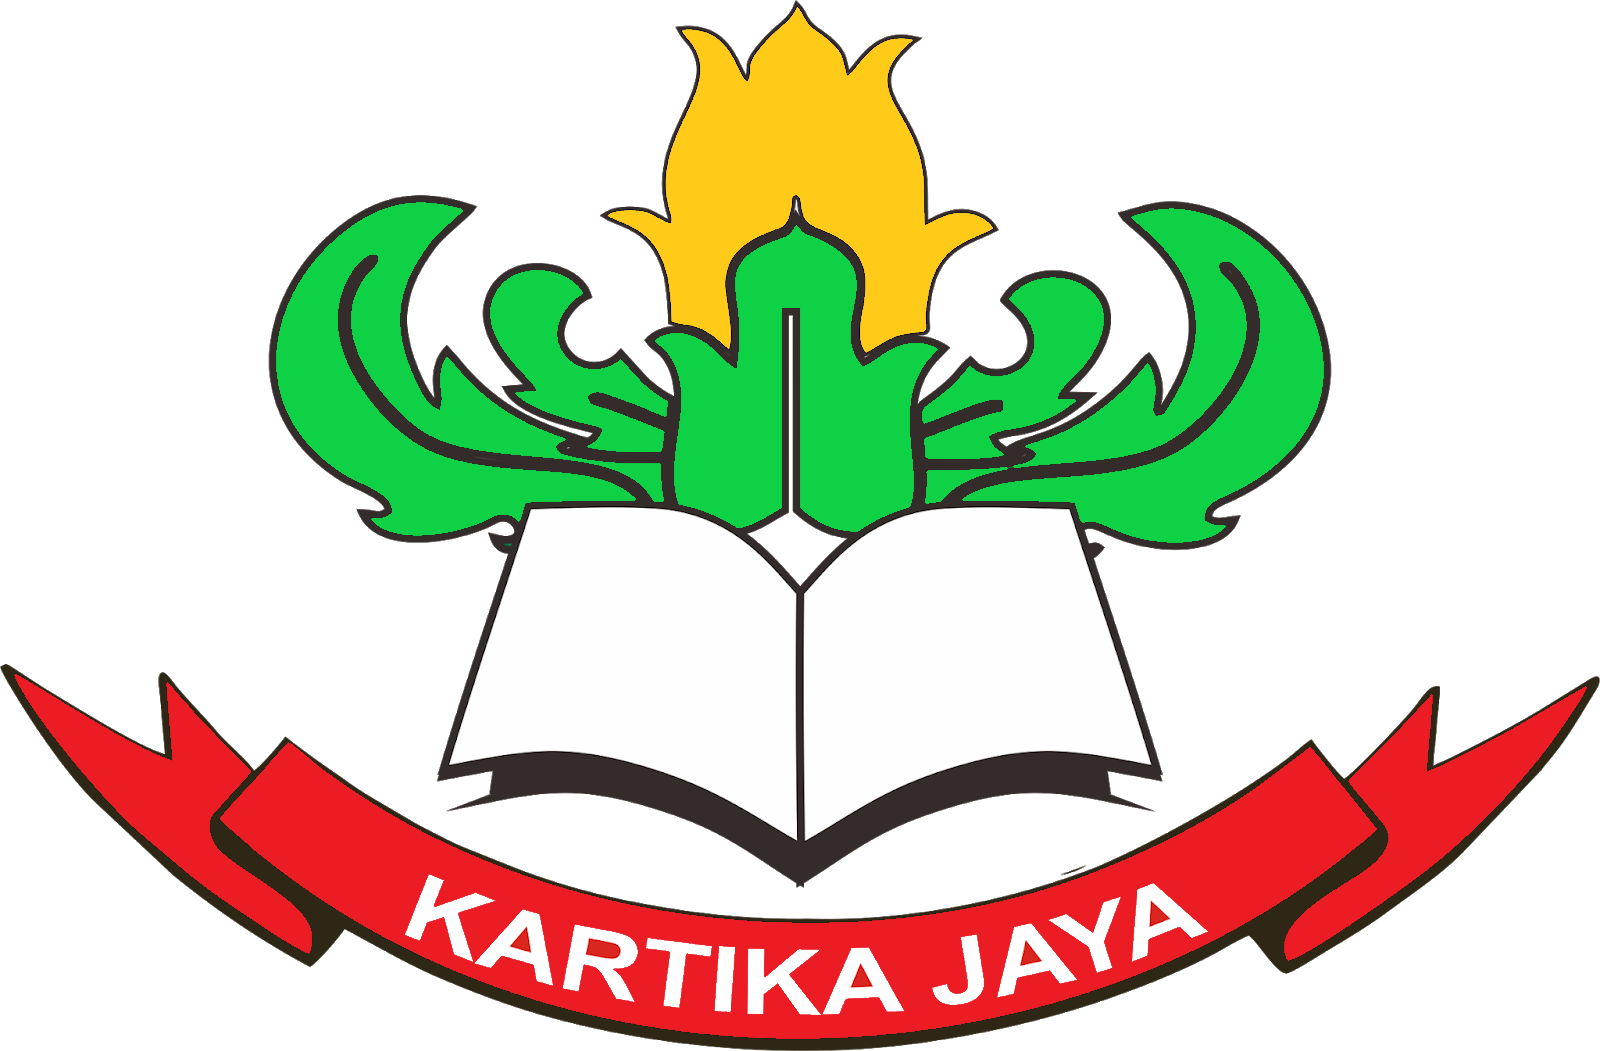 logo_yayasan_kartika_jaya_png